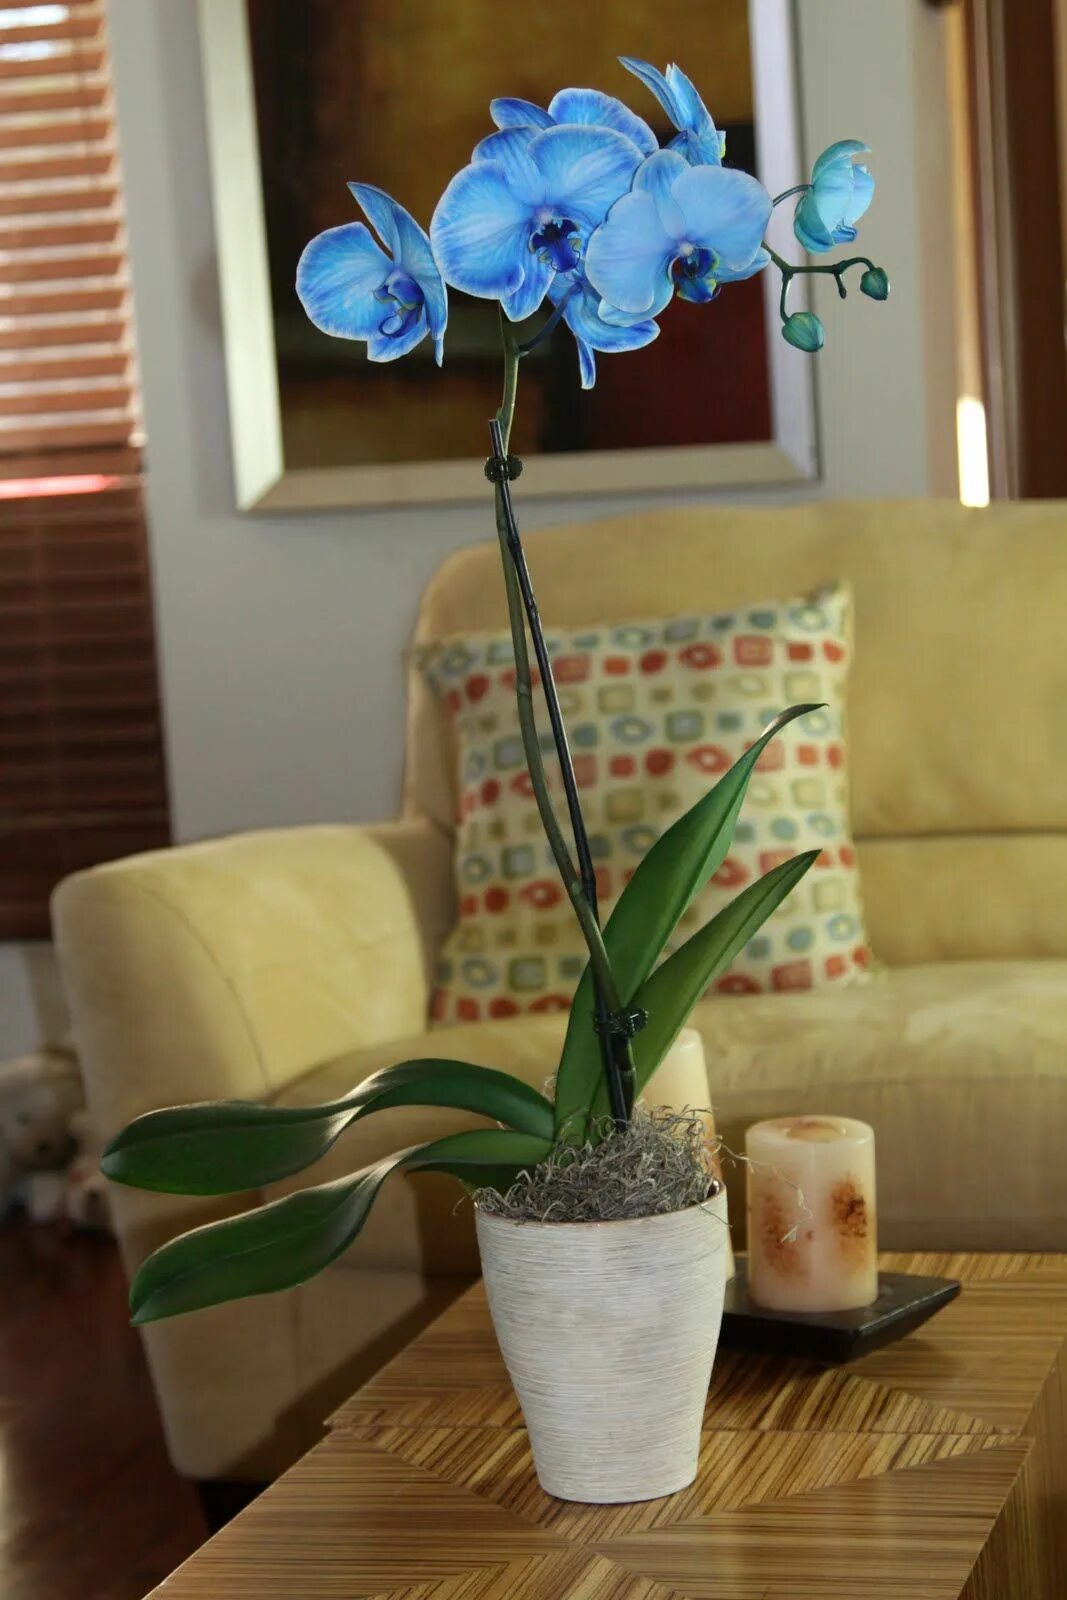 Орхидея фаленопсис голубая. Орхидея фаленопсис синяя. Фаленопсис синий. Фаленопсис голубой. Синяя орхидея в горшке